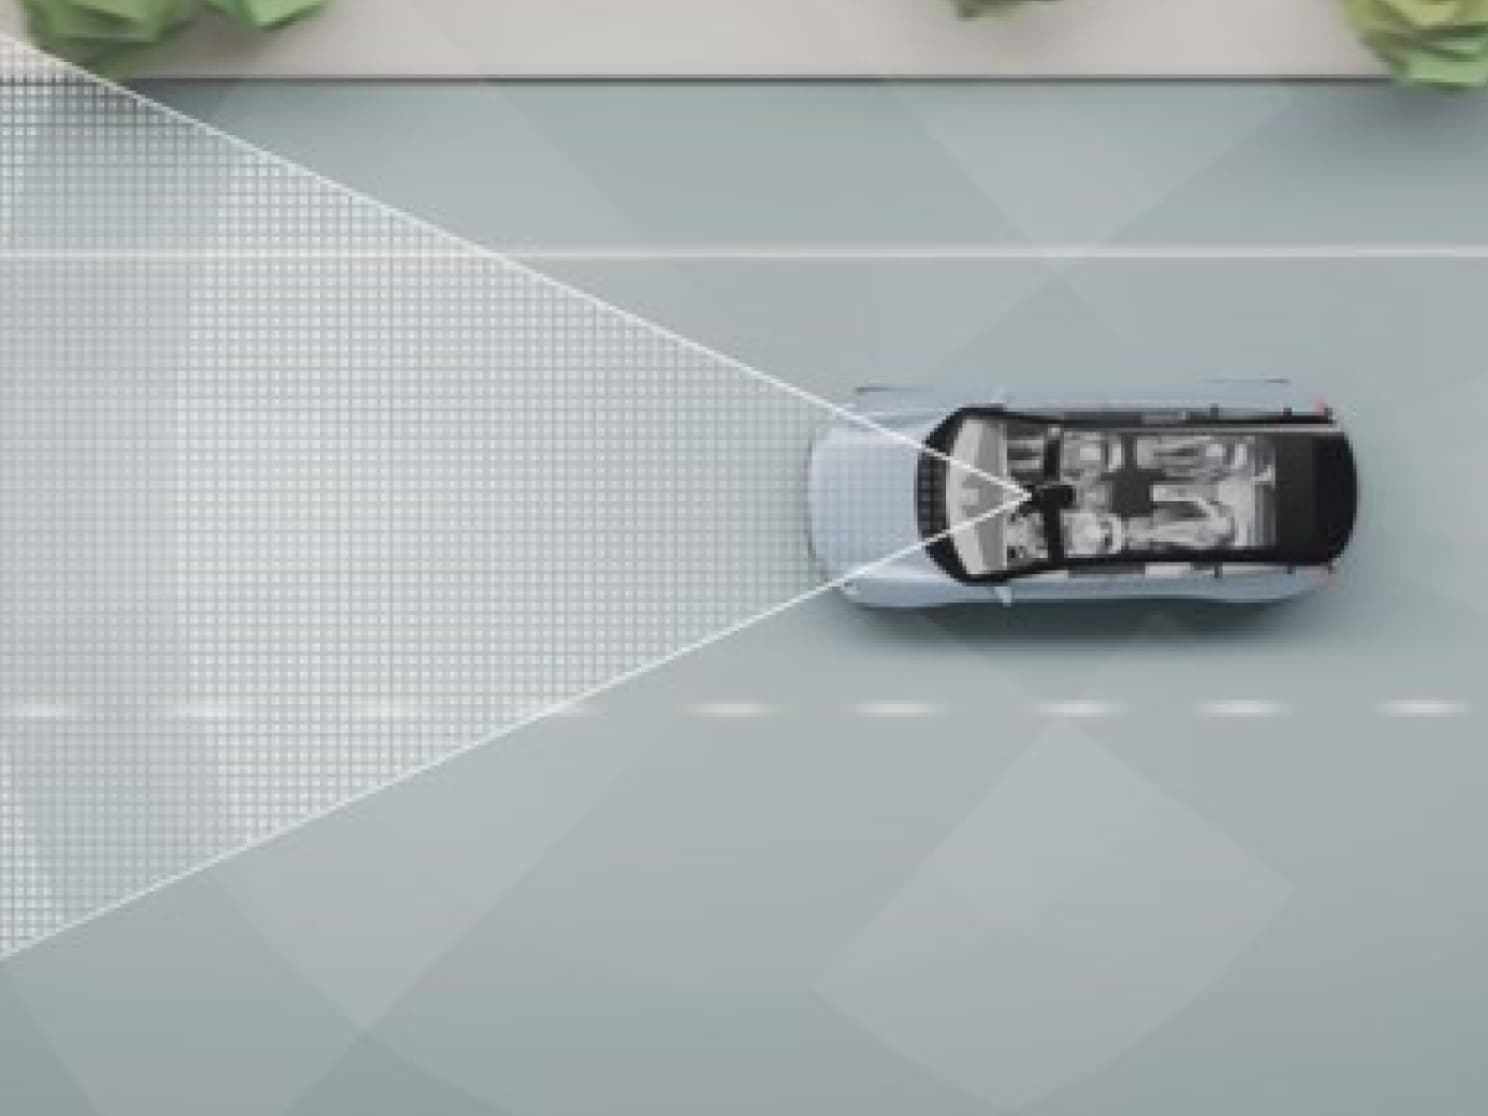 Digitalni prikaz automobila na putu sa trakama i drugim objektima.